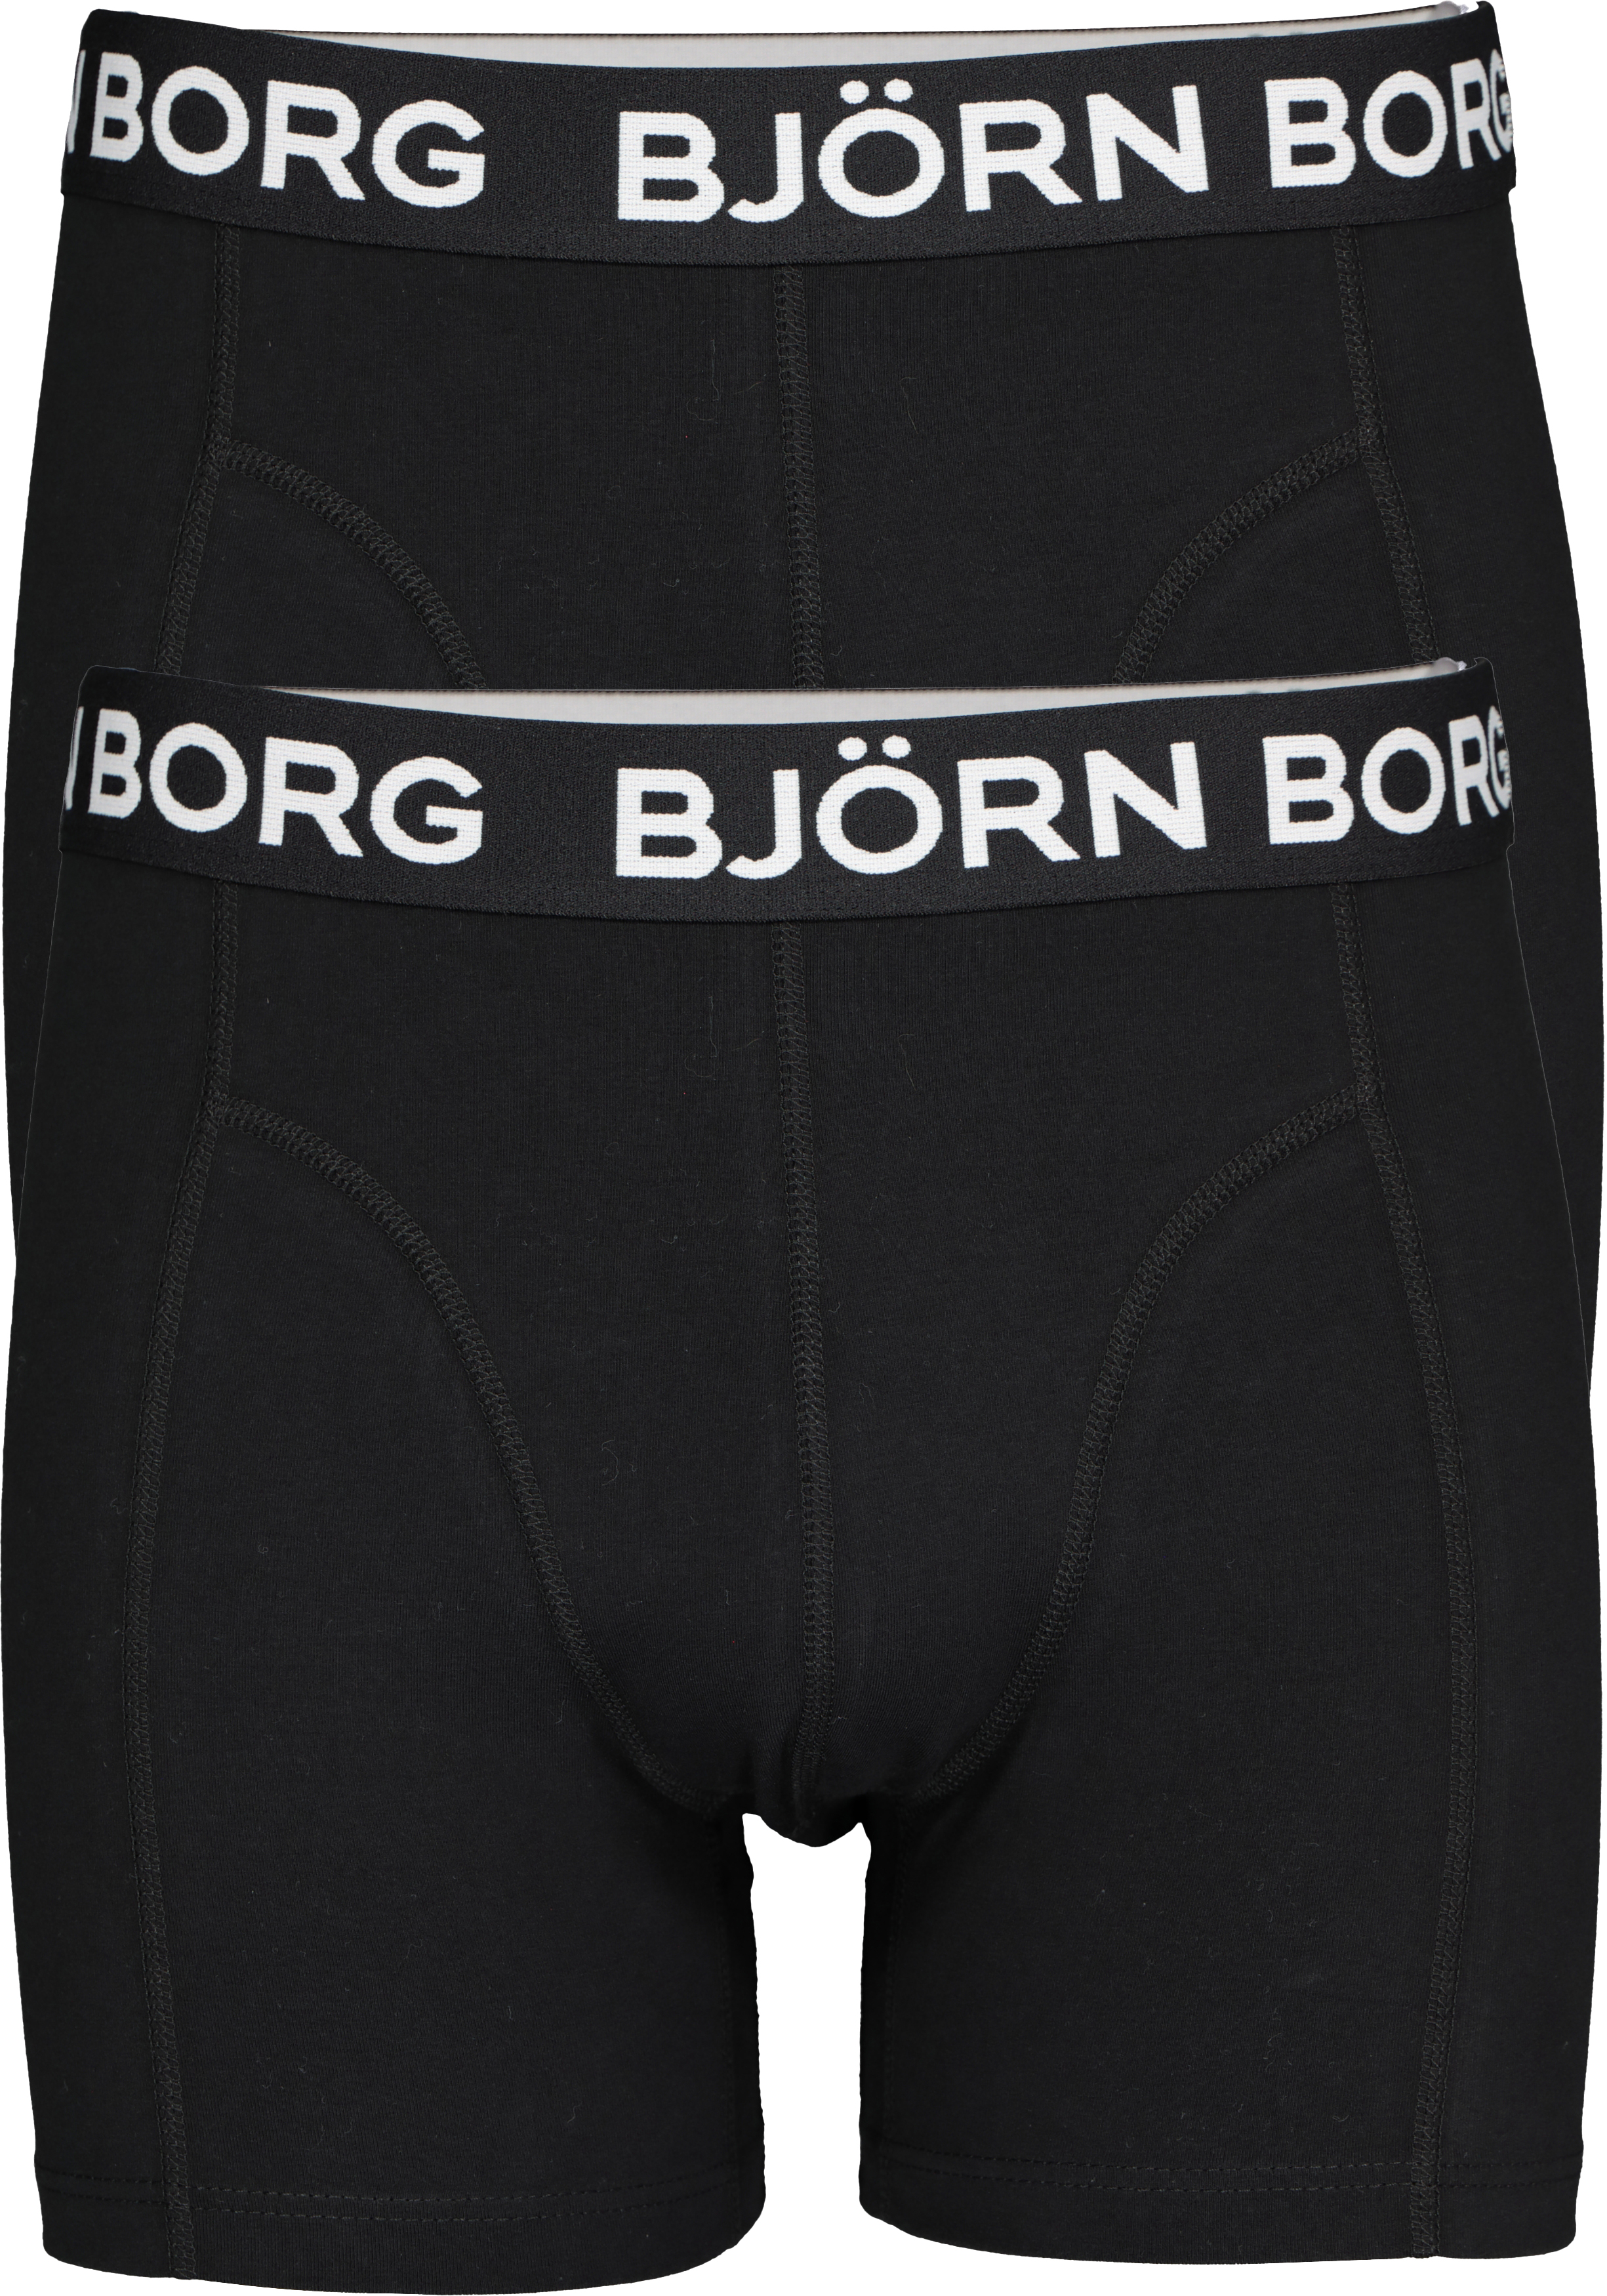 aardolie Ga naar het circuit ik heb nodig Bjorn Borg boxershorts Core (2-pack), heren boxers normale lengte, zwart -  Zomer SALE tot 50% korting